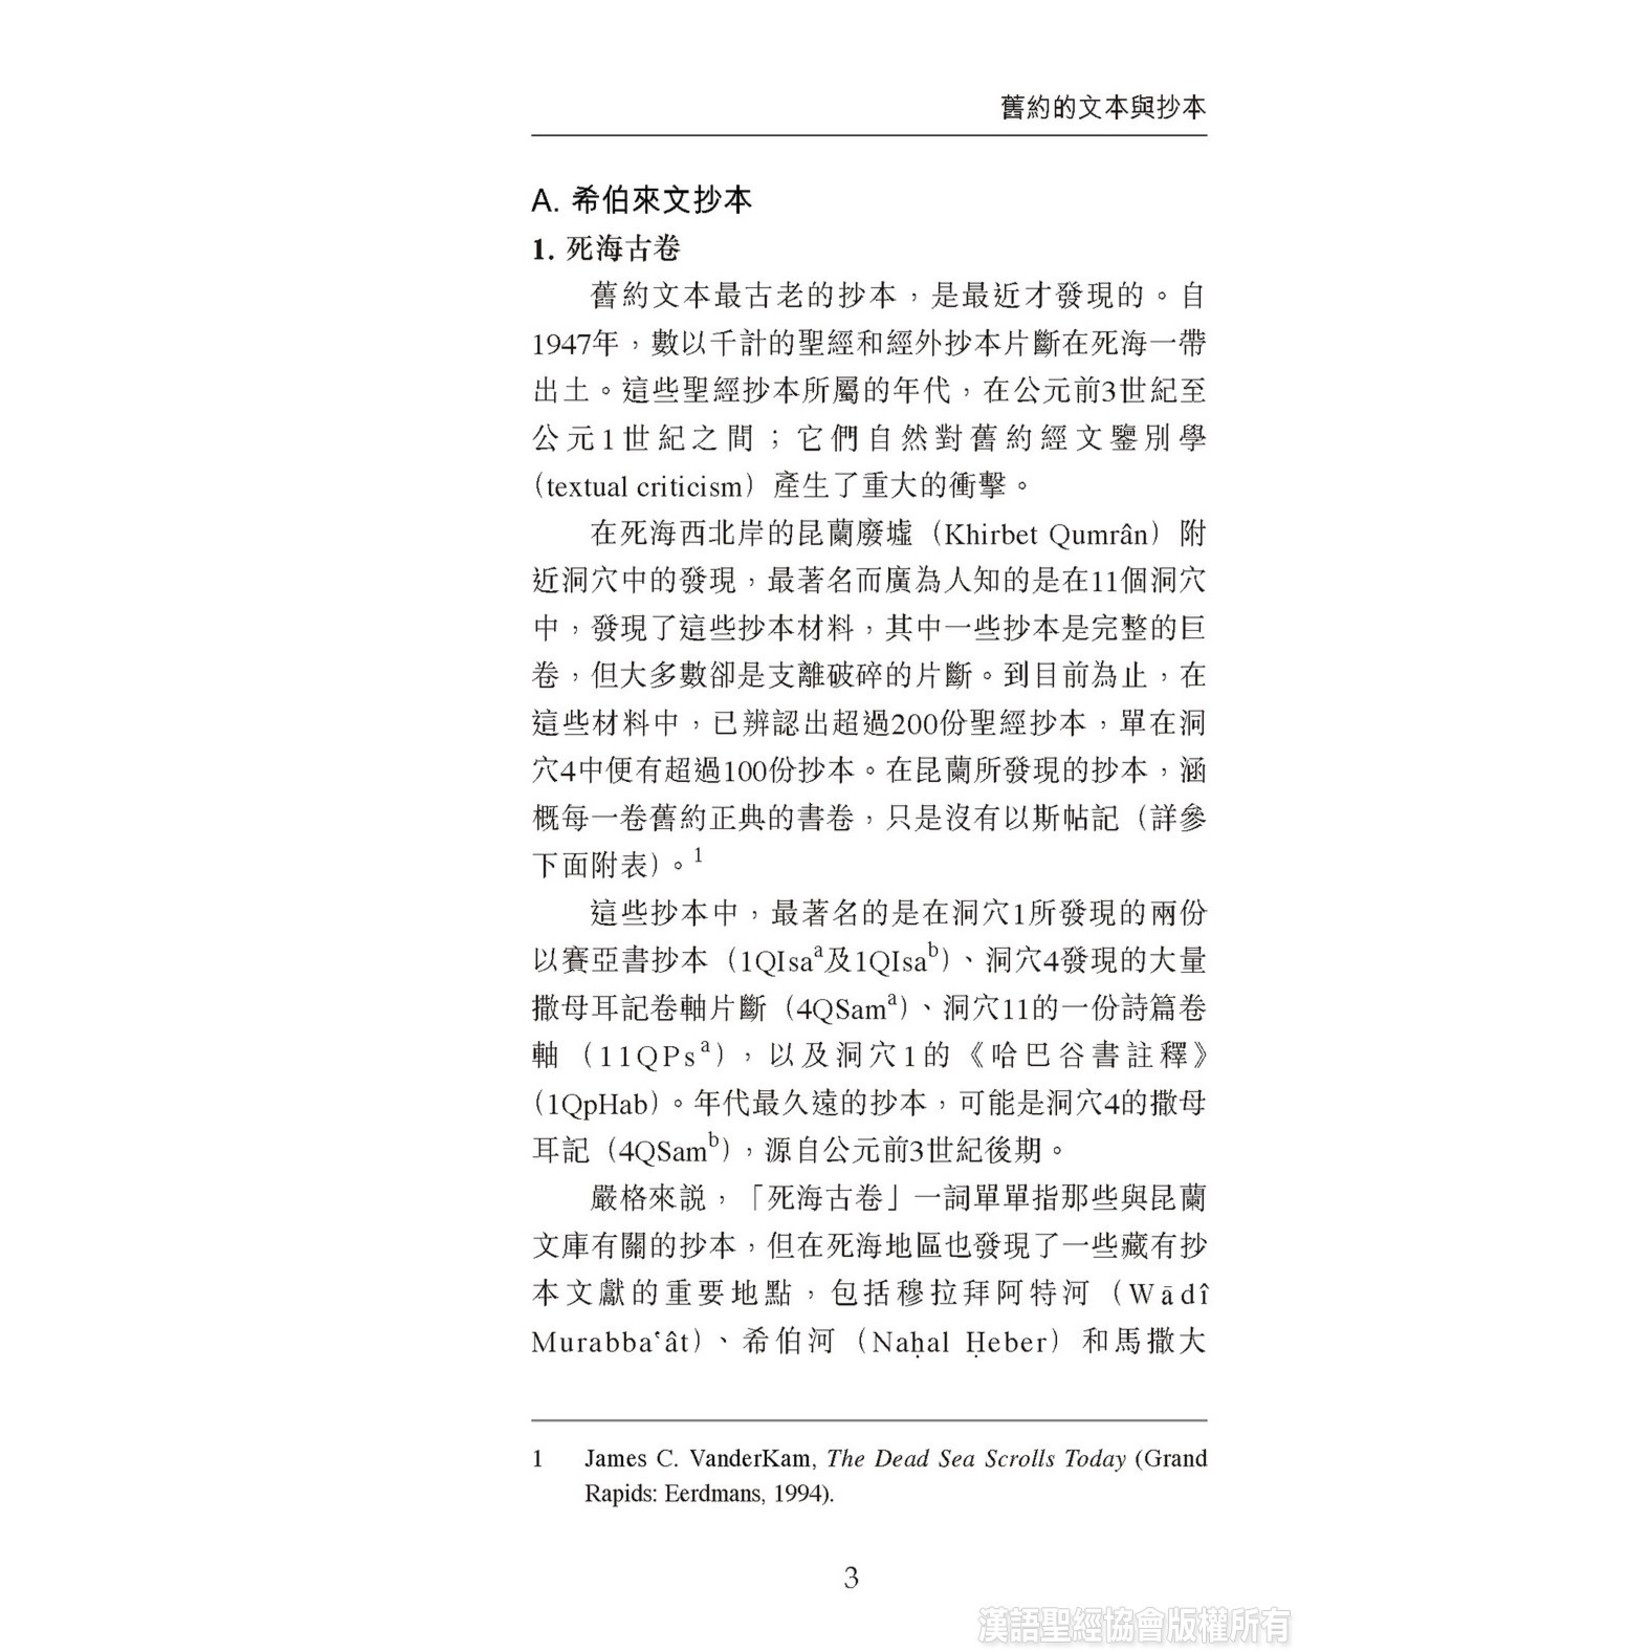 漢語聖經協會 Chinese Bible International 國際聖經百科全書：聖經研究篇－經文與抄本